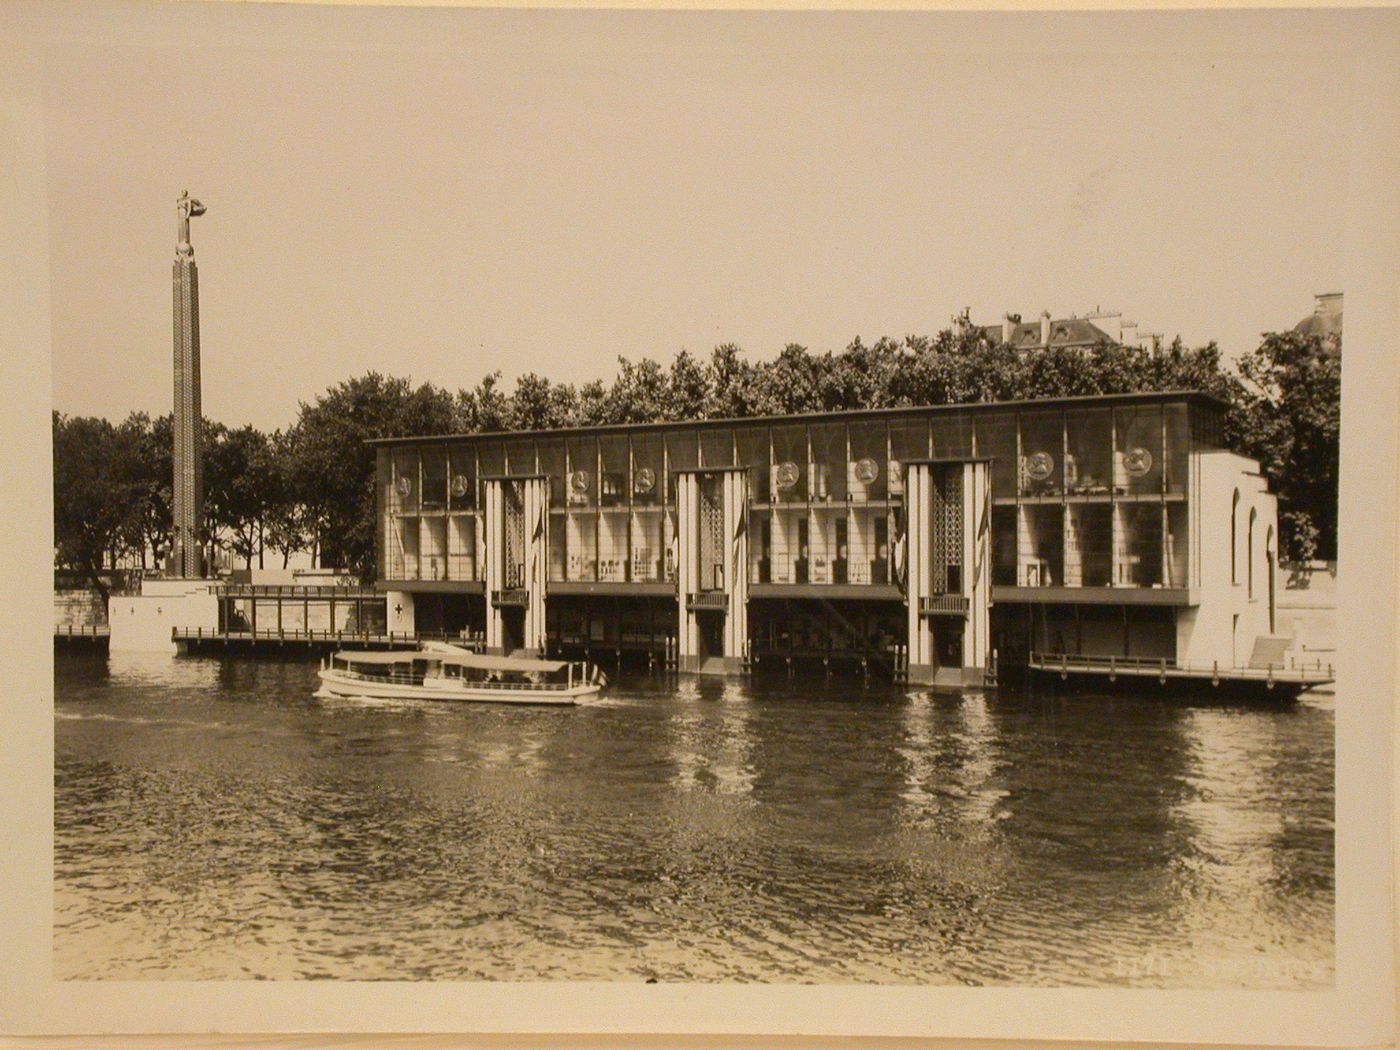 View of the Pavillon de la Sécurité with the Seine in the foreground, 1937 Exposition internationale, Paris, France